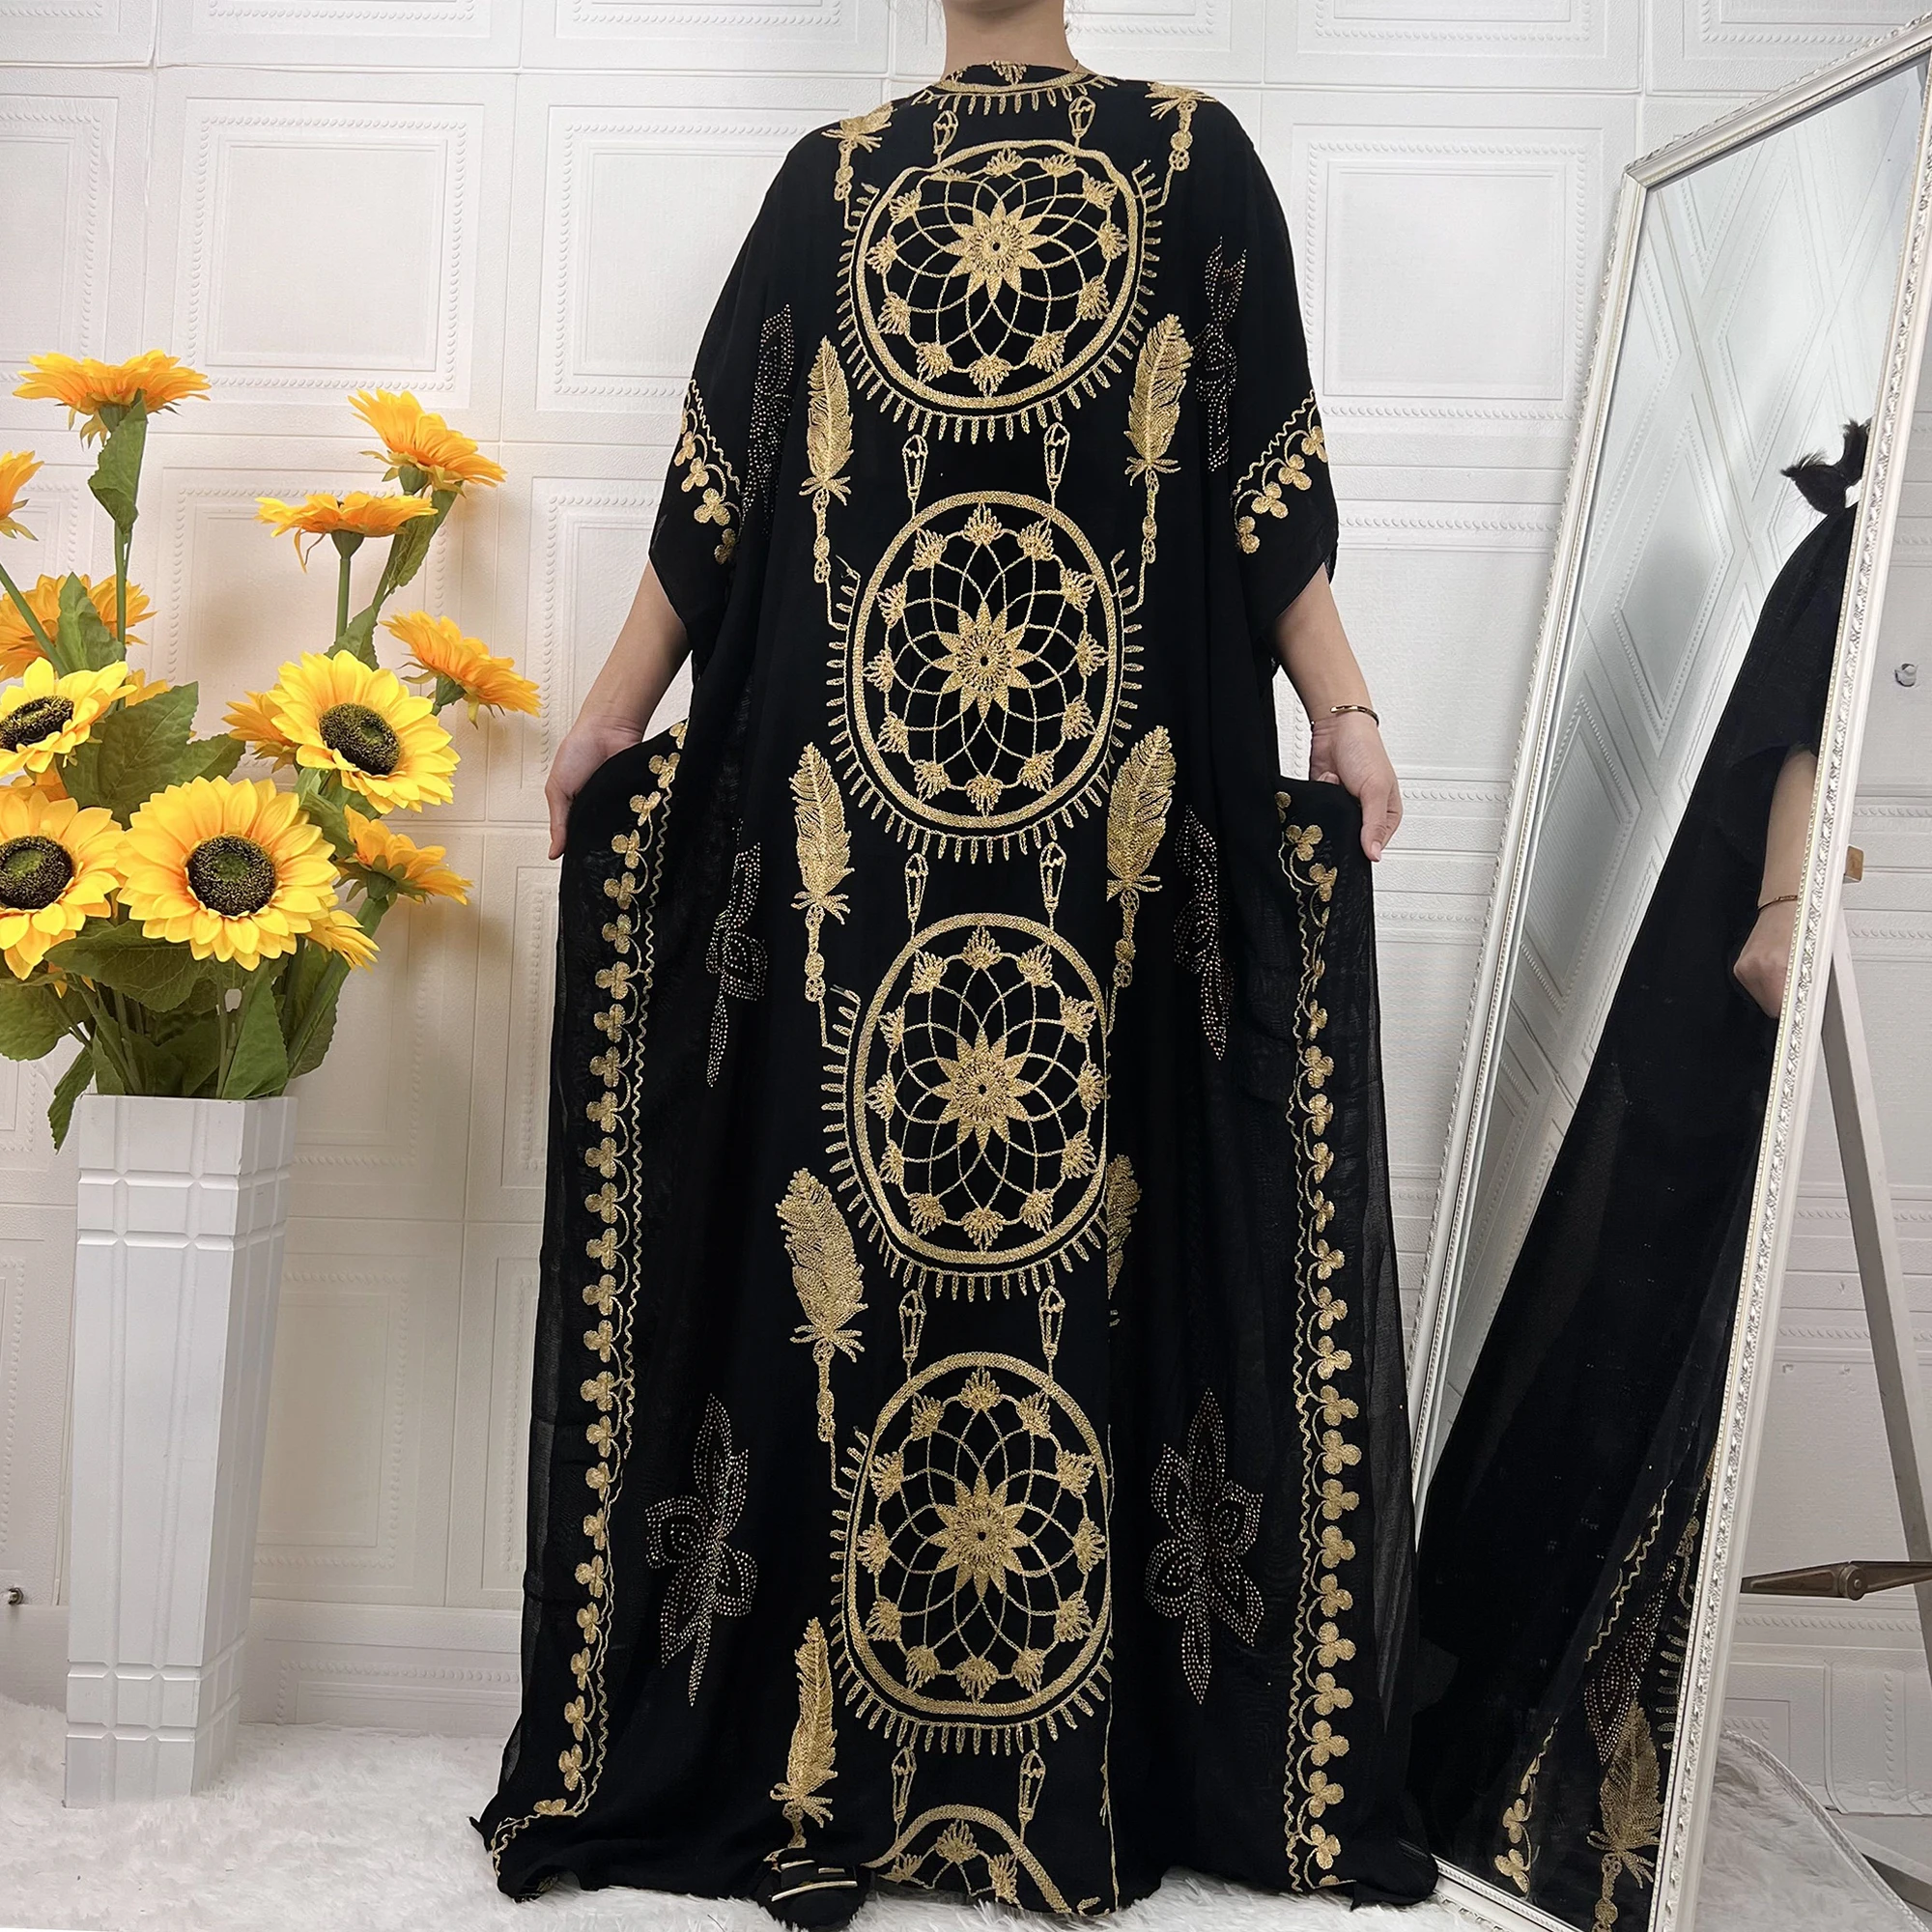 Новинка, Abaya Дубай, турецкое мусульманское платье, мода 2021, кафтан, халат с золотой нитью, Африканский бубоу, вечернее платье, элегантная мусу...